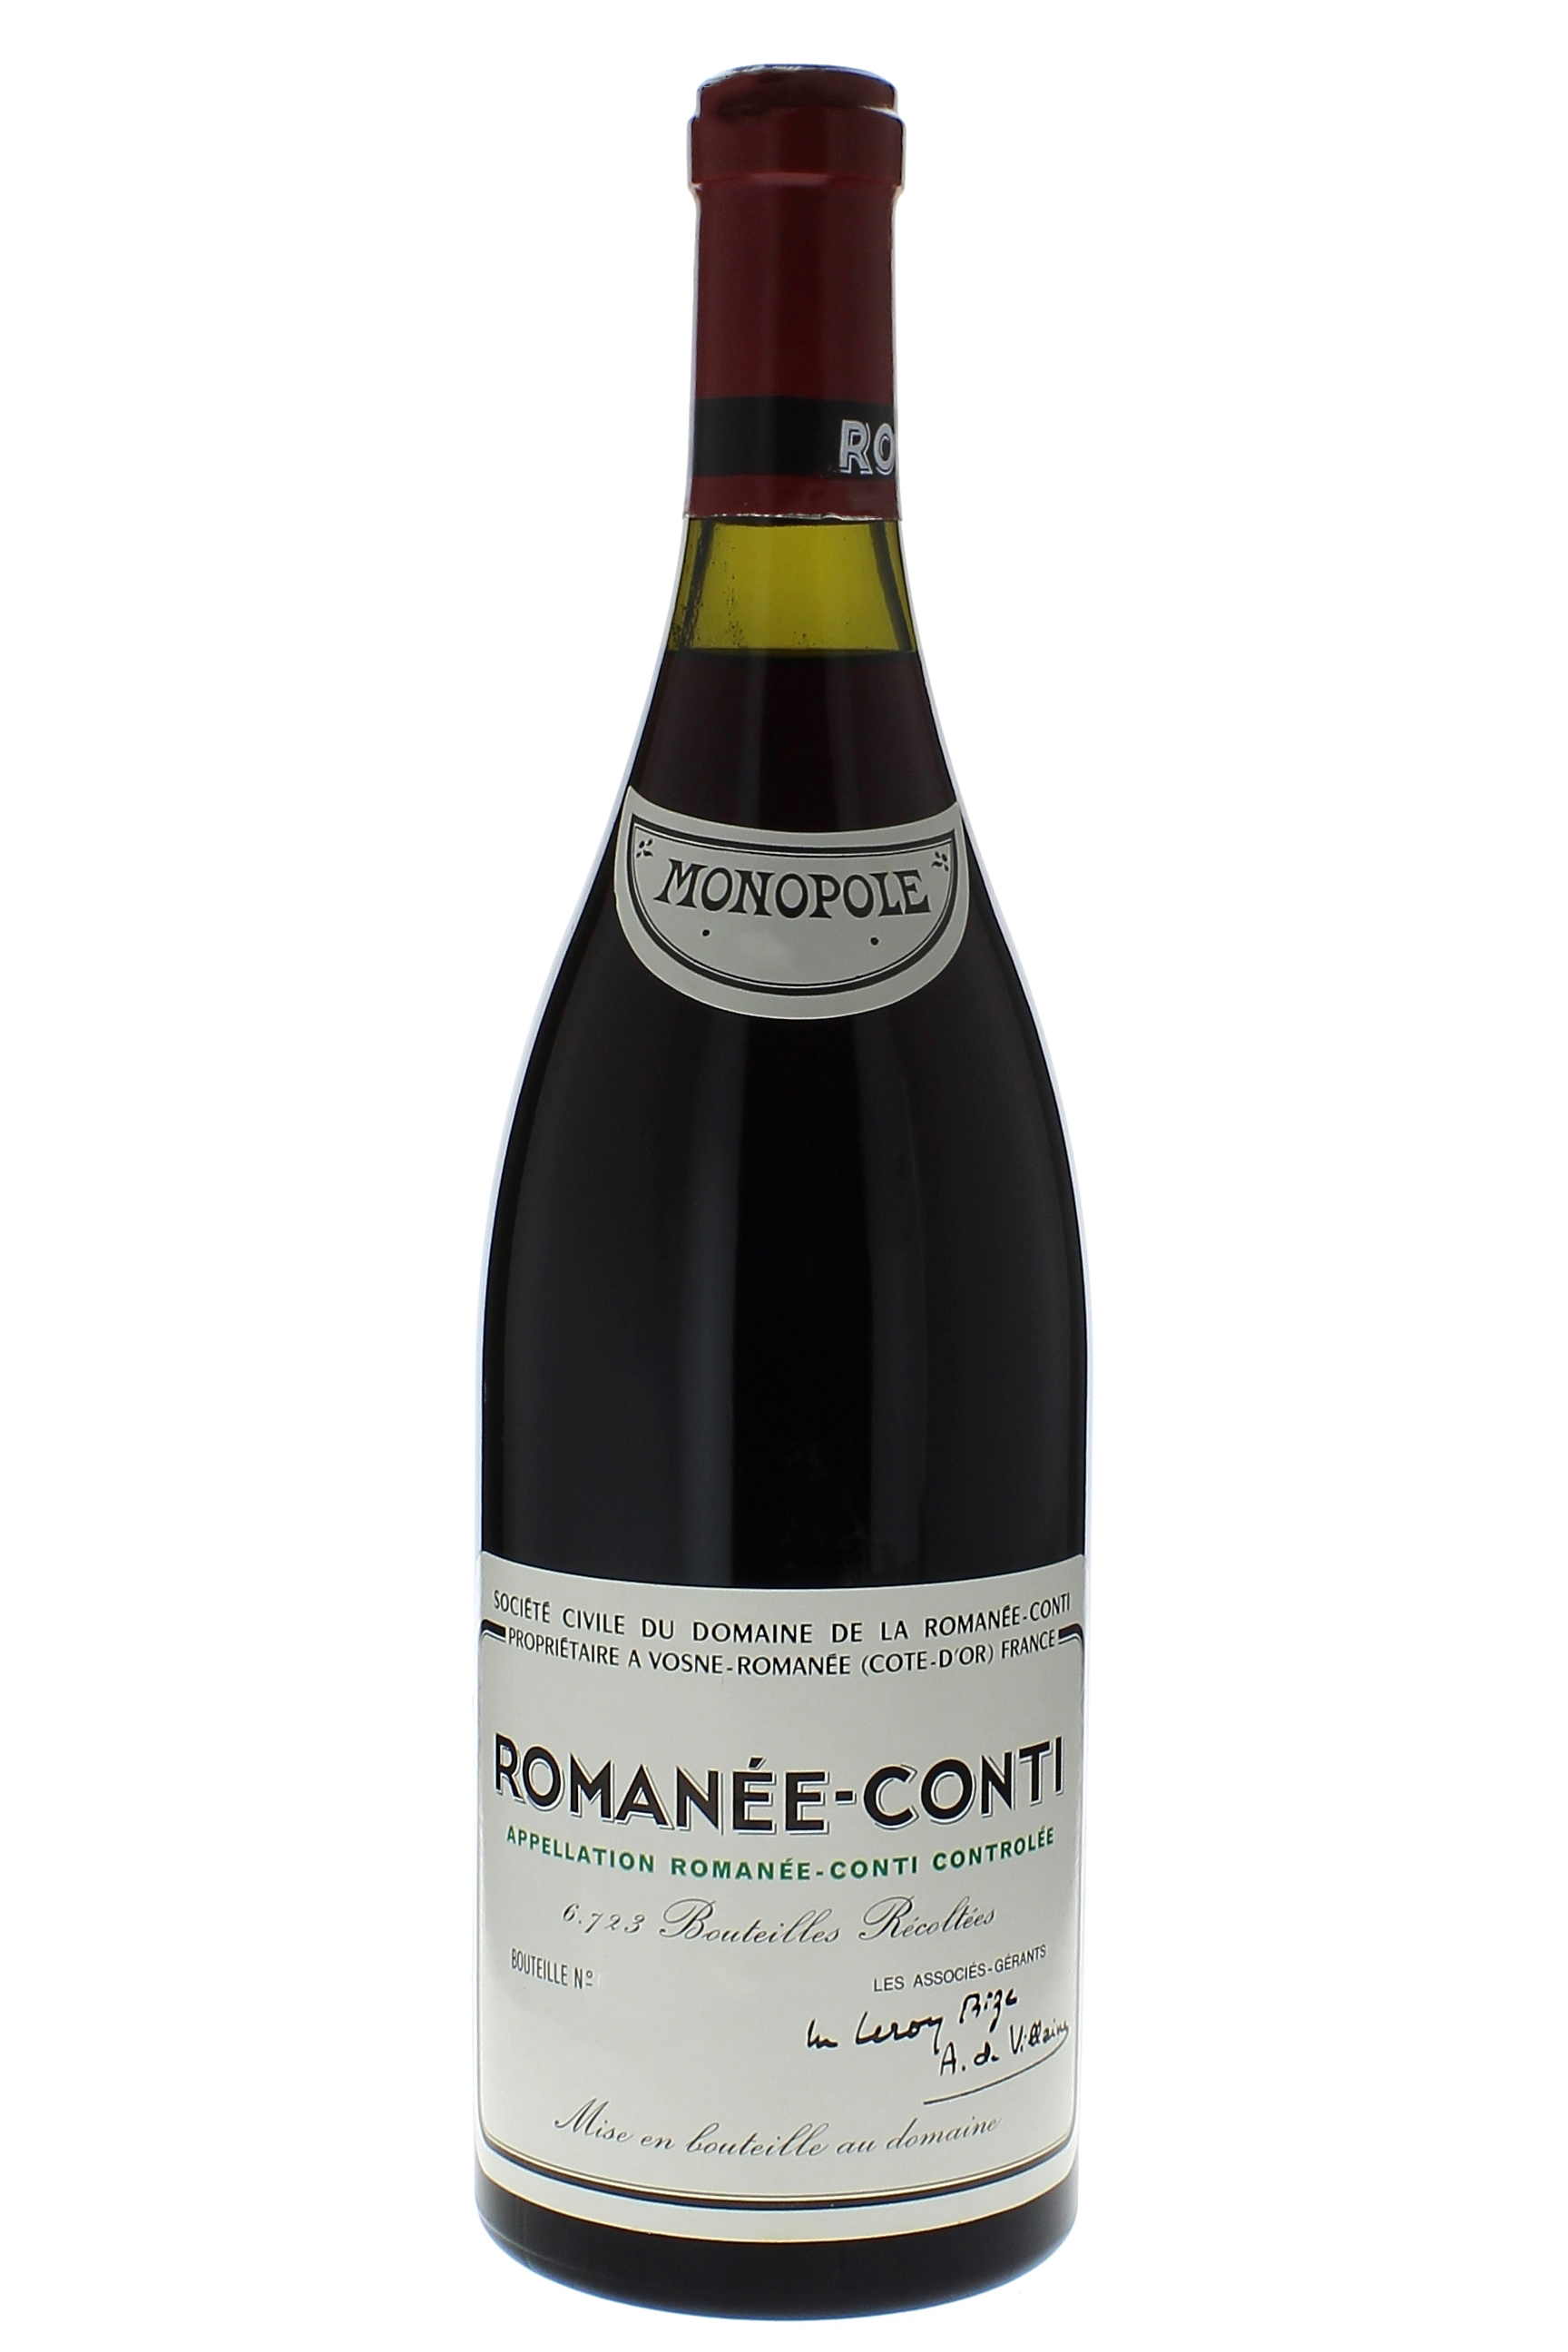 Romane conti grand cru 2005 Domaine ROMANEE CONTI, Bourgogne rouge